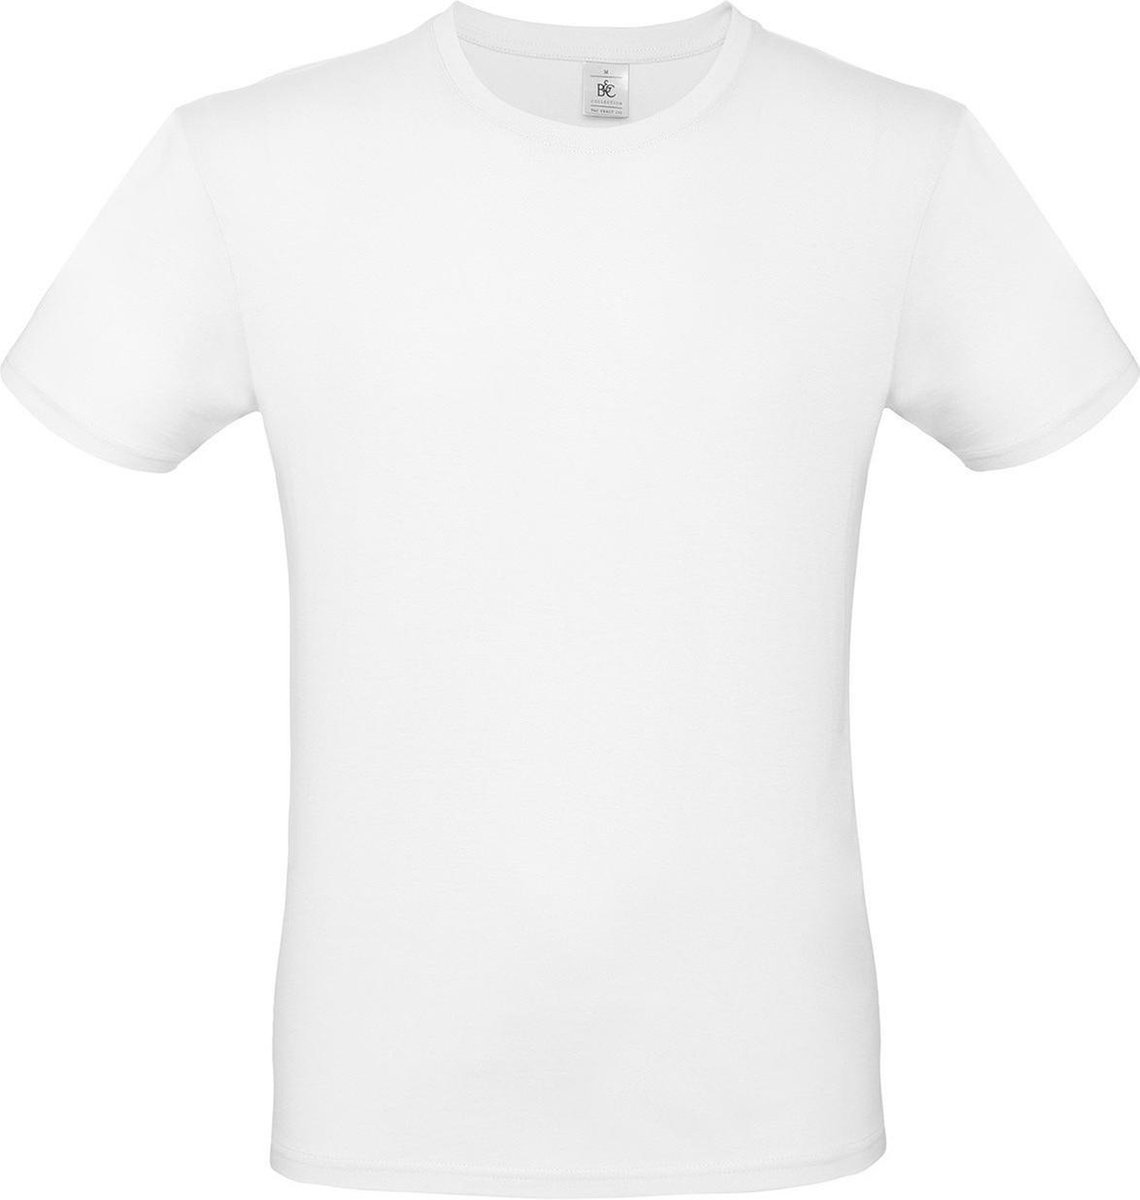 Set van 3x stuks wit basic t-shirt met ronde hals voor heren - katoen - 145 grams - witte shirts / kleding, maat: M (50)